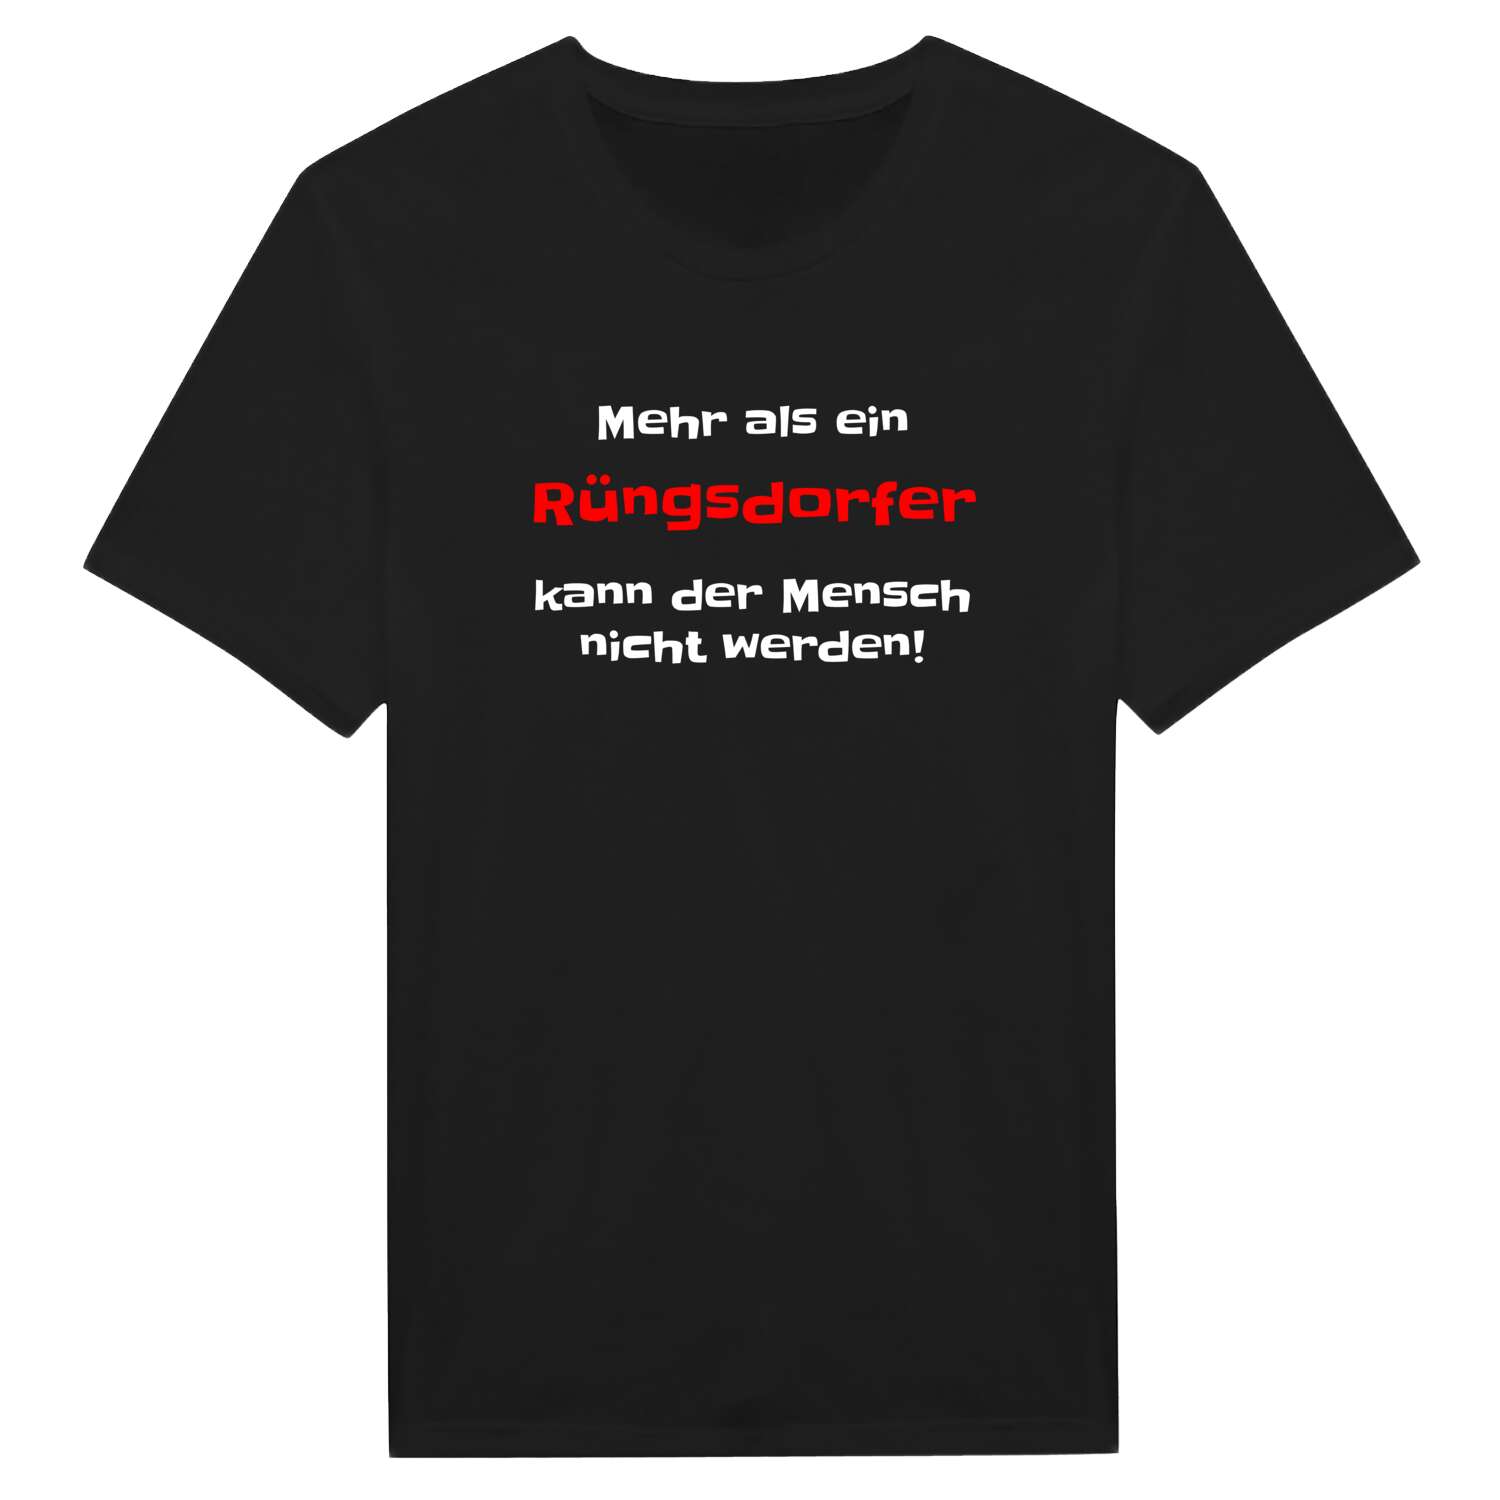 Rüngsdorf T-Shirt »Mehr als ein«